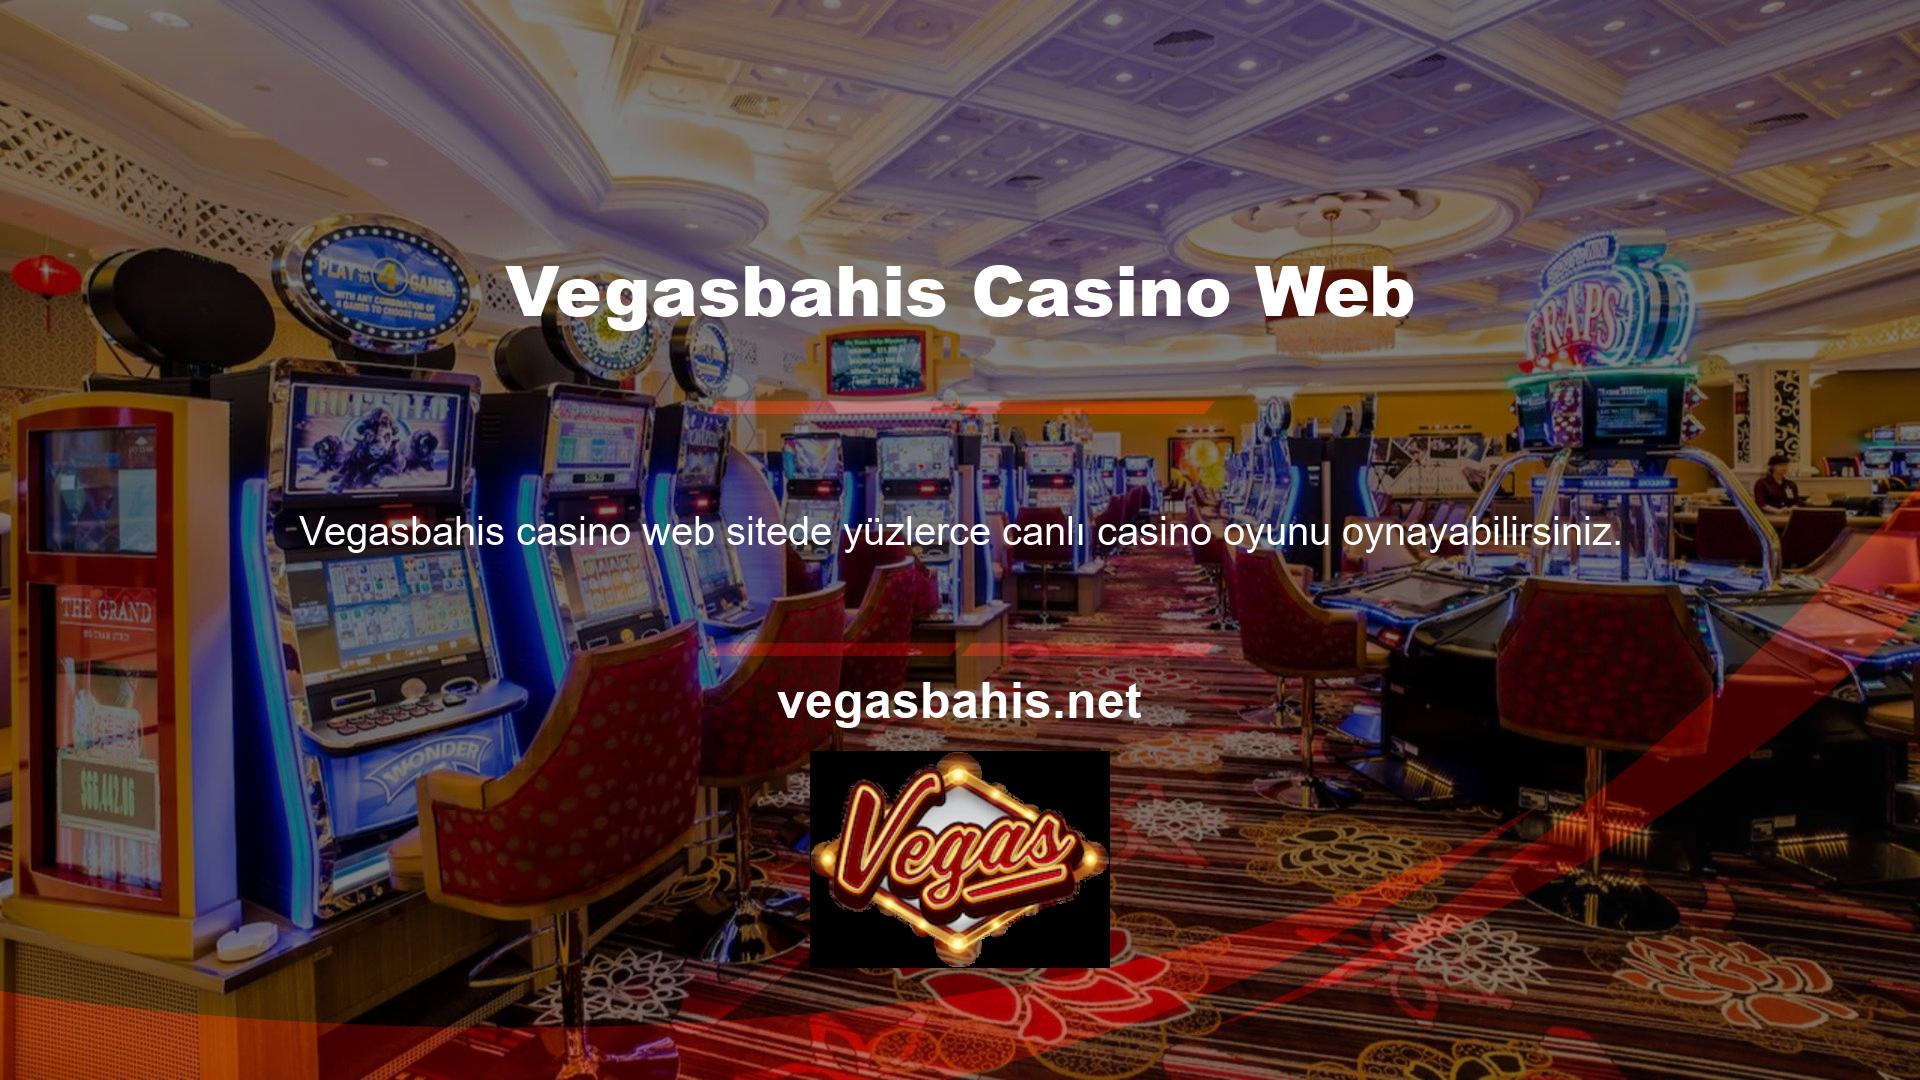 Casino web sitesinde yüksek oranlı oyunlar ve bahisler bulunmaktadır